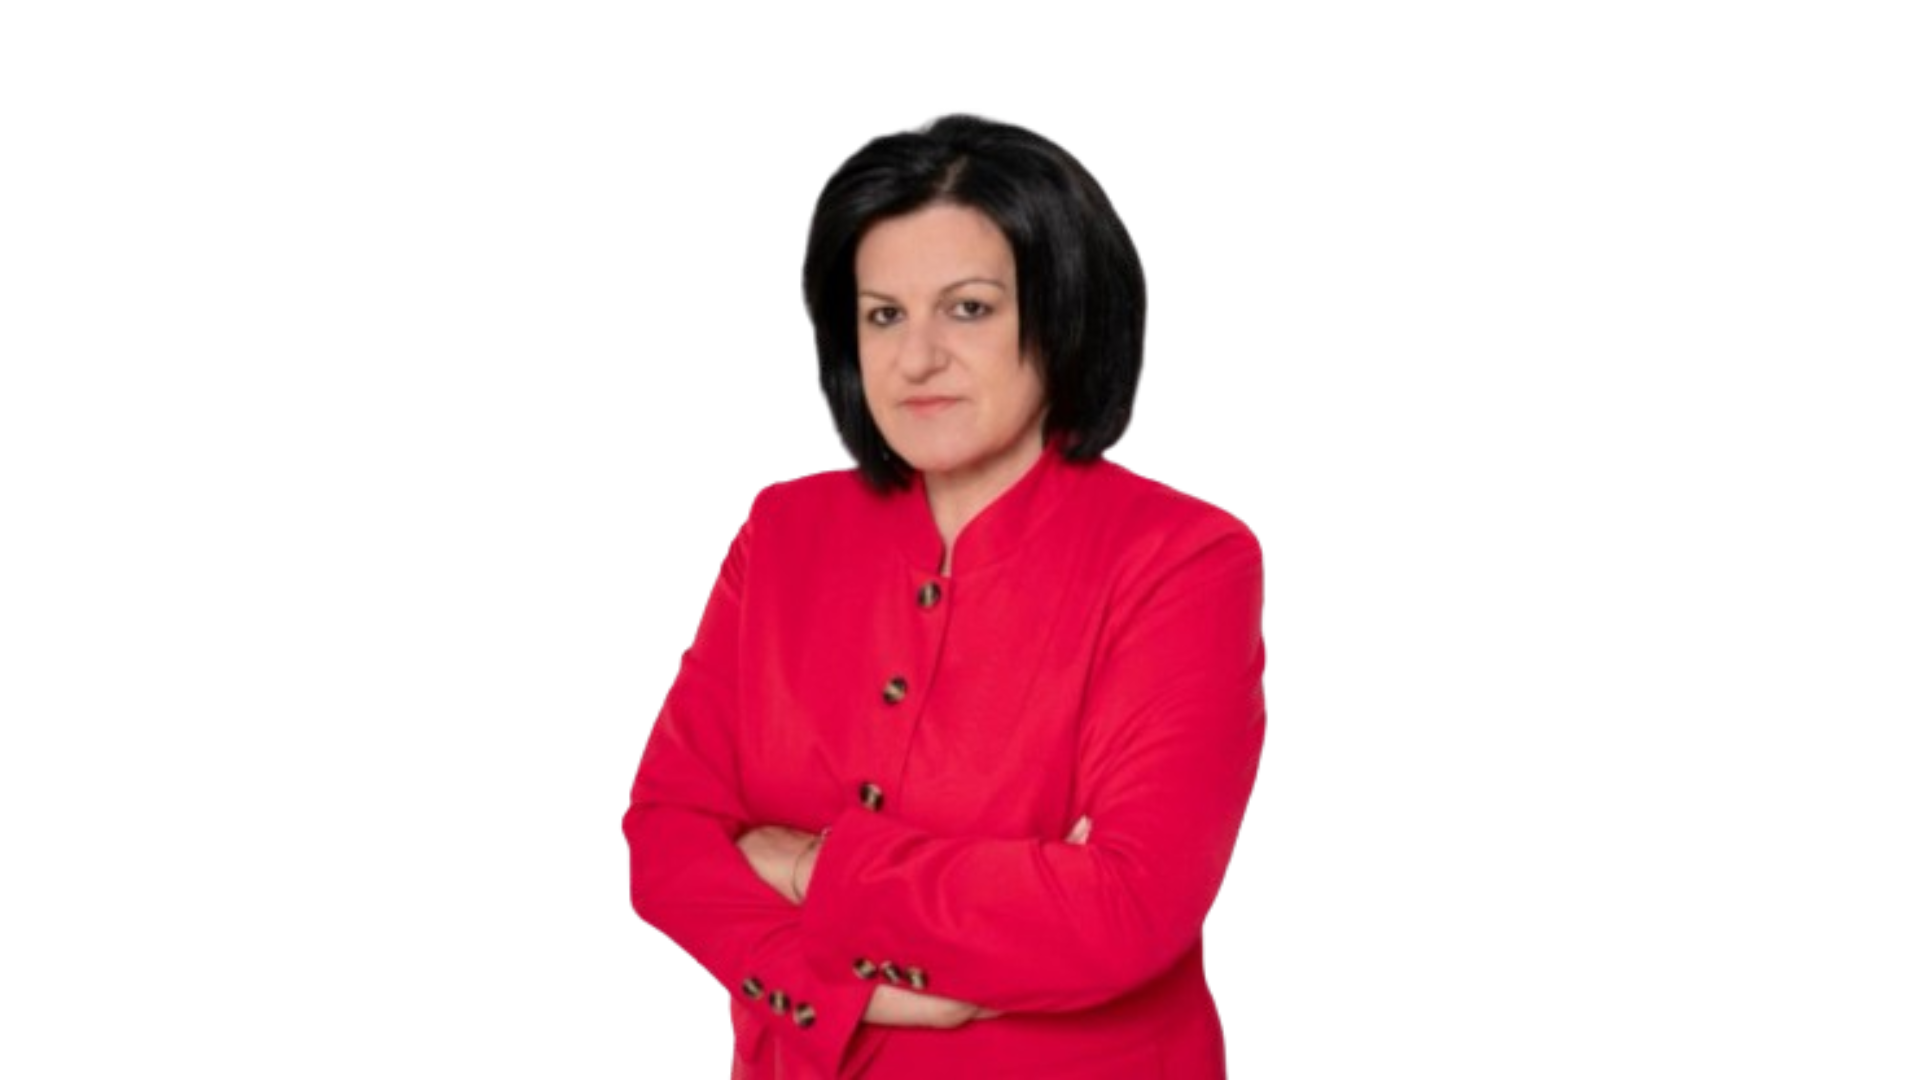 Γιαννιτσοπούλου: Ενοχλούν οι προτάσεις μας στον ετήσιο προγραμματισμός δράσης του Δήμου Αμύνταιου;